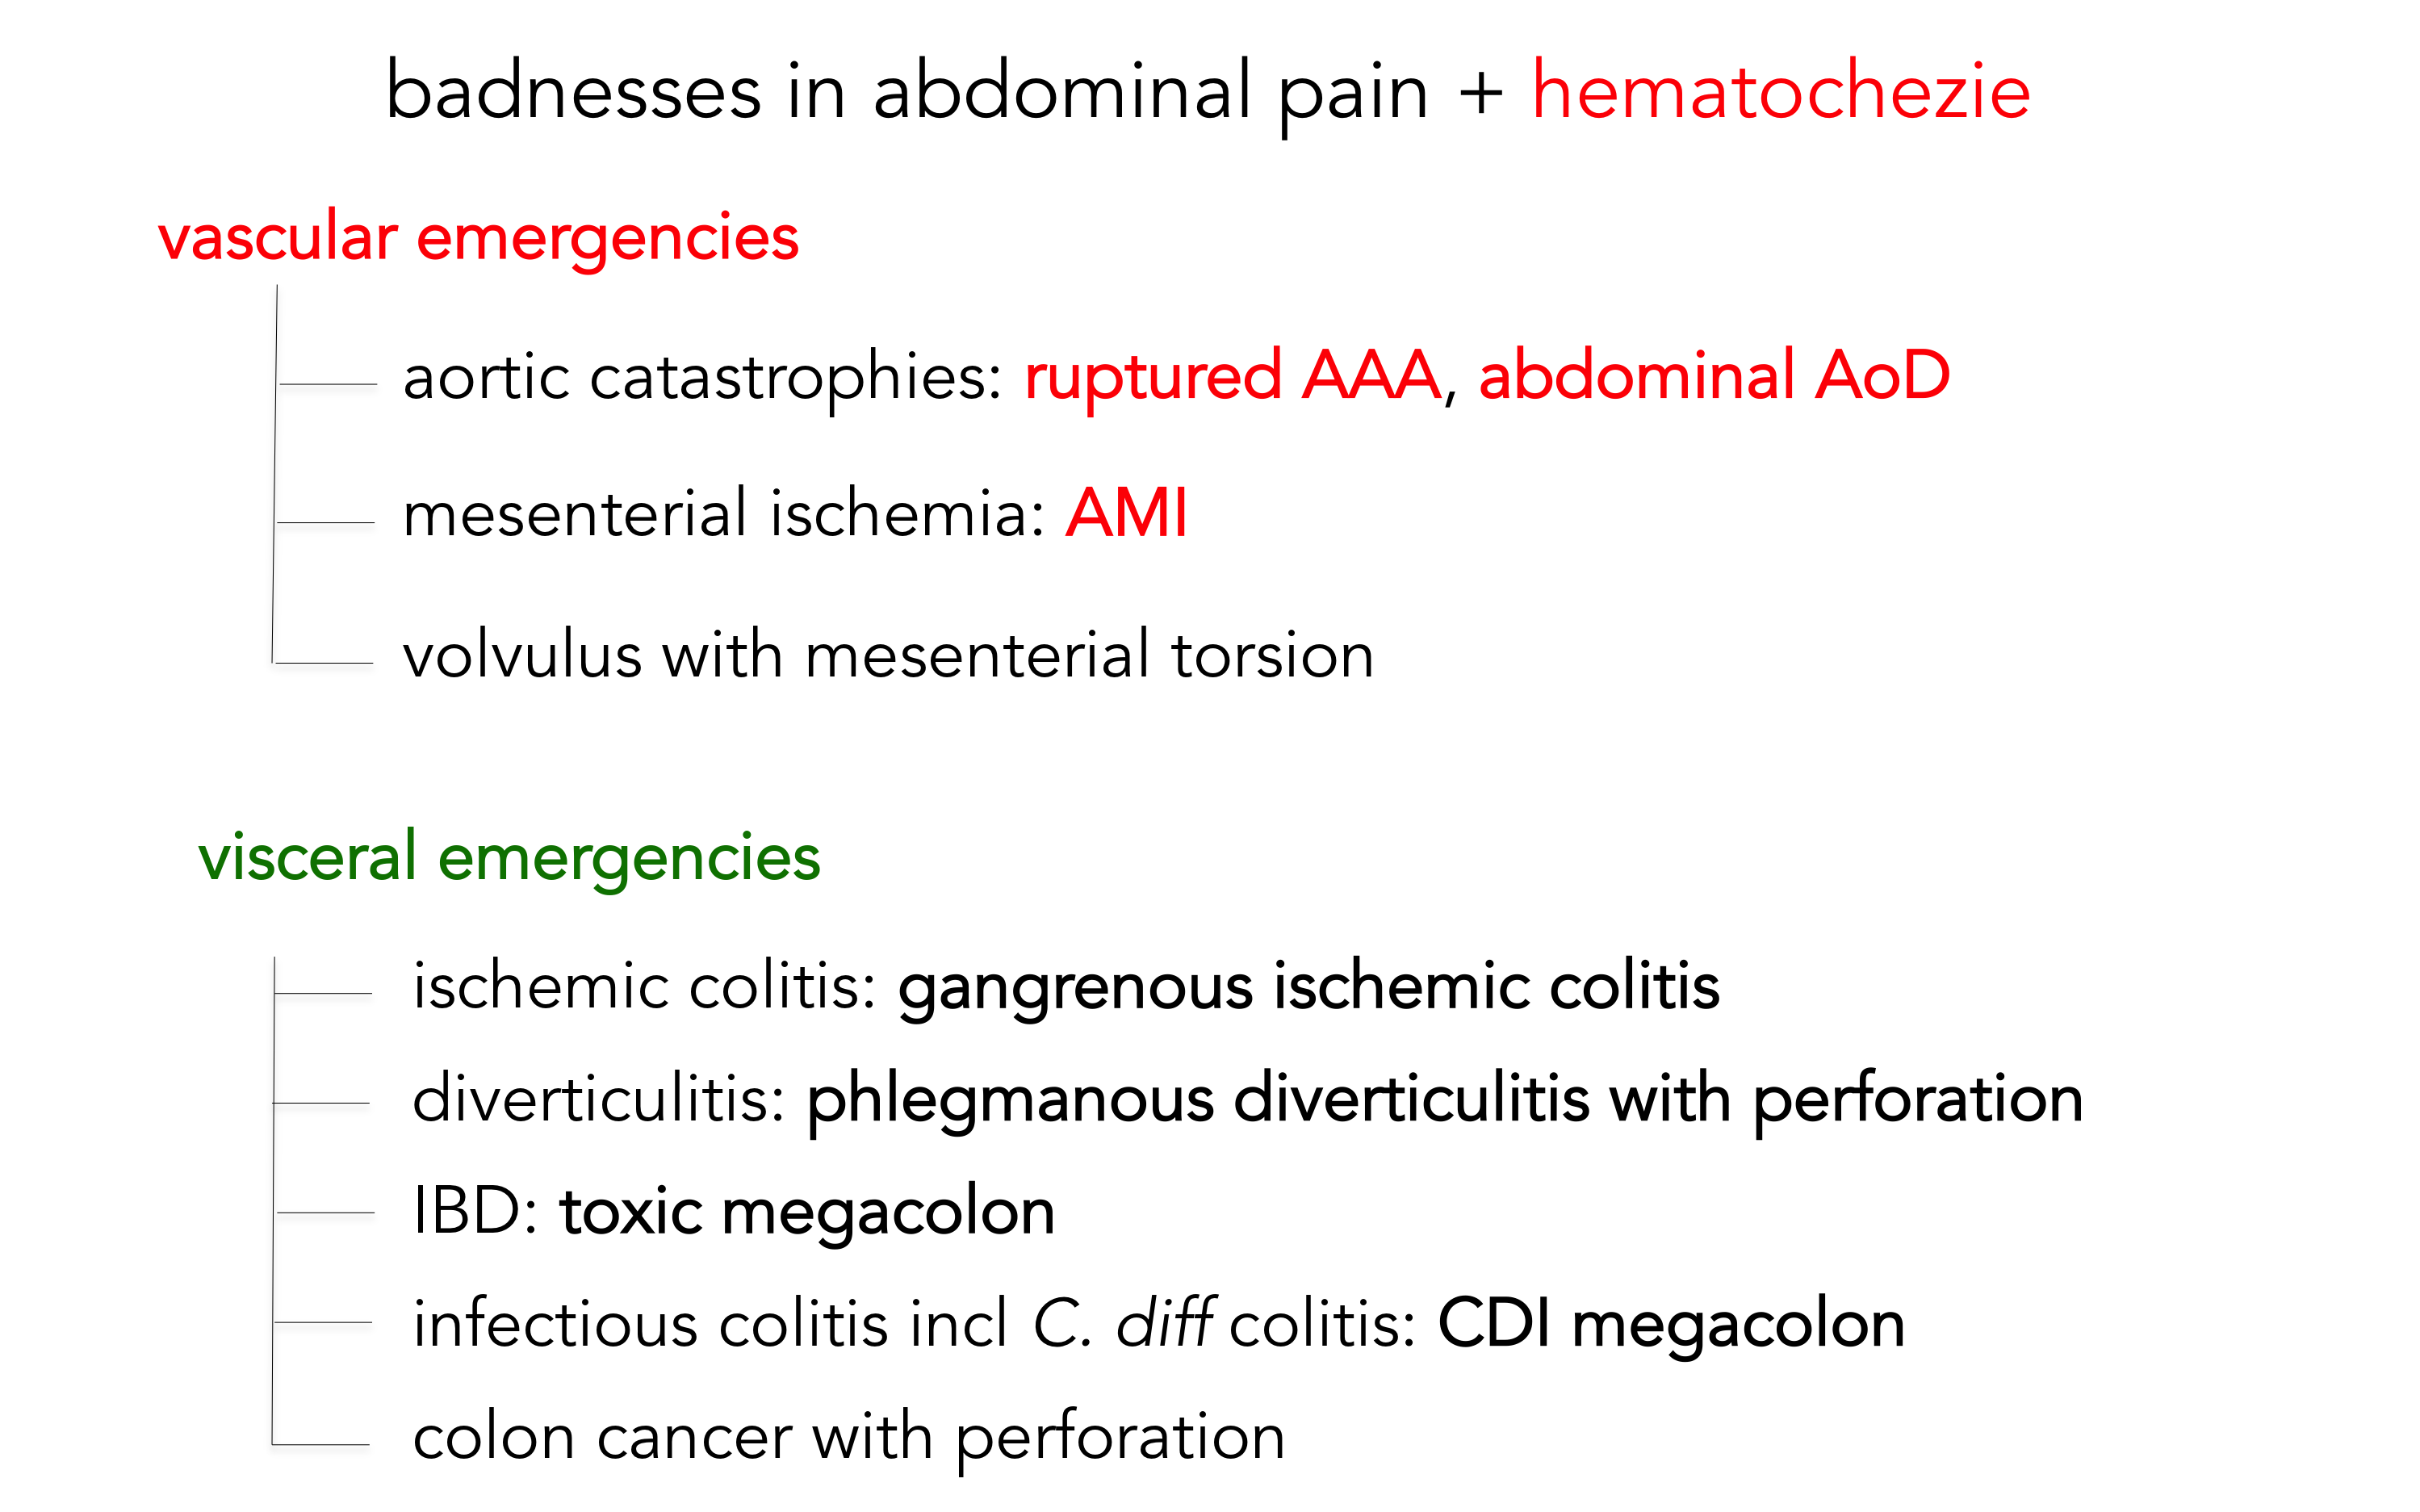 badness abdominal pain + hematochezie.png